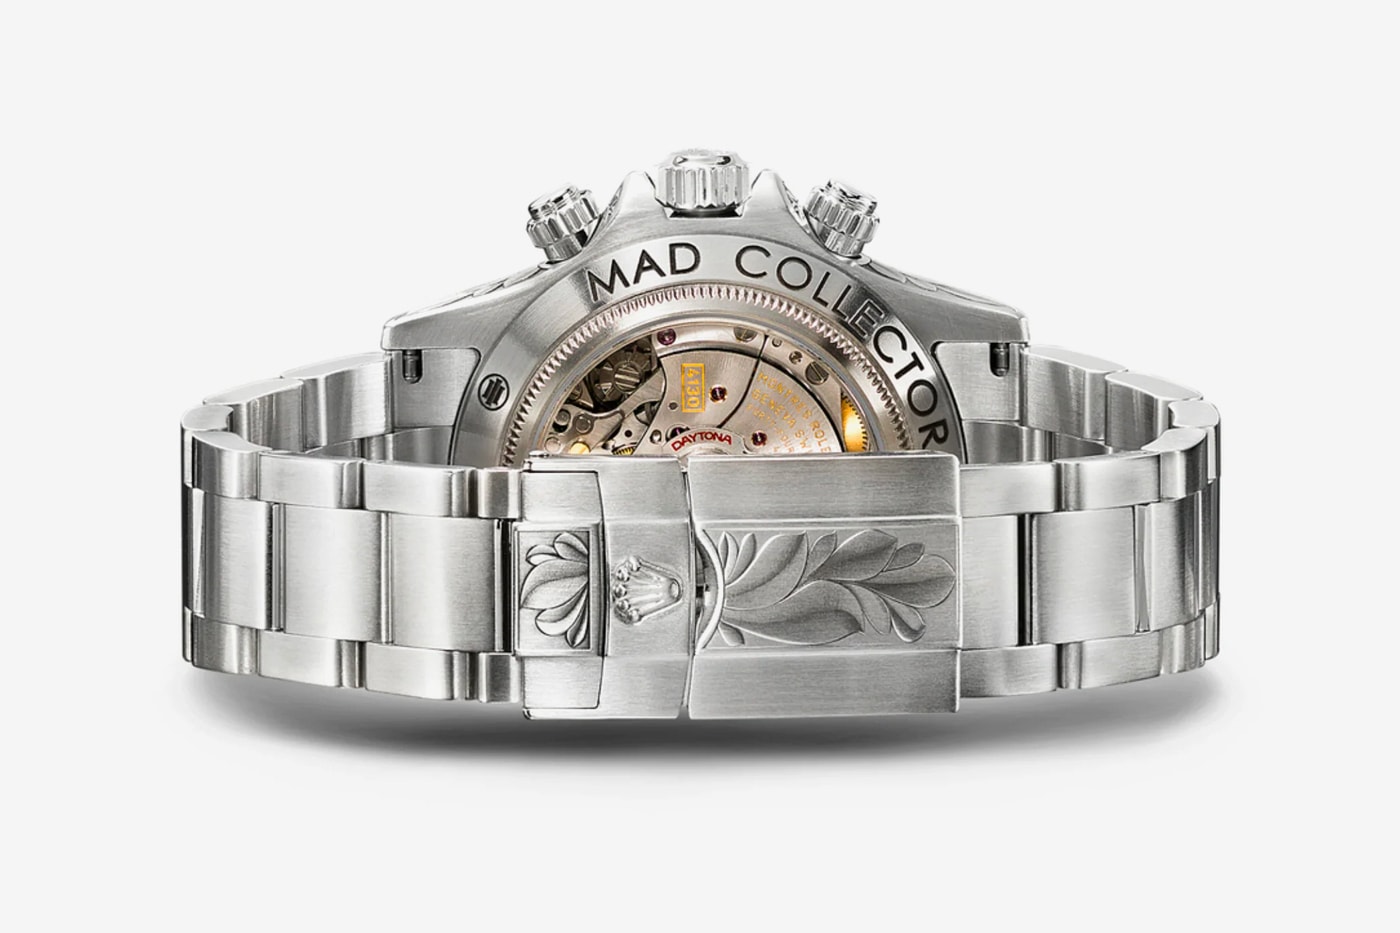 MAD Paris Rolex Daytona Openwork SK II Watch Release Info Date Buy